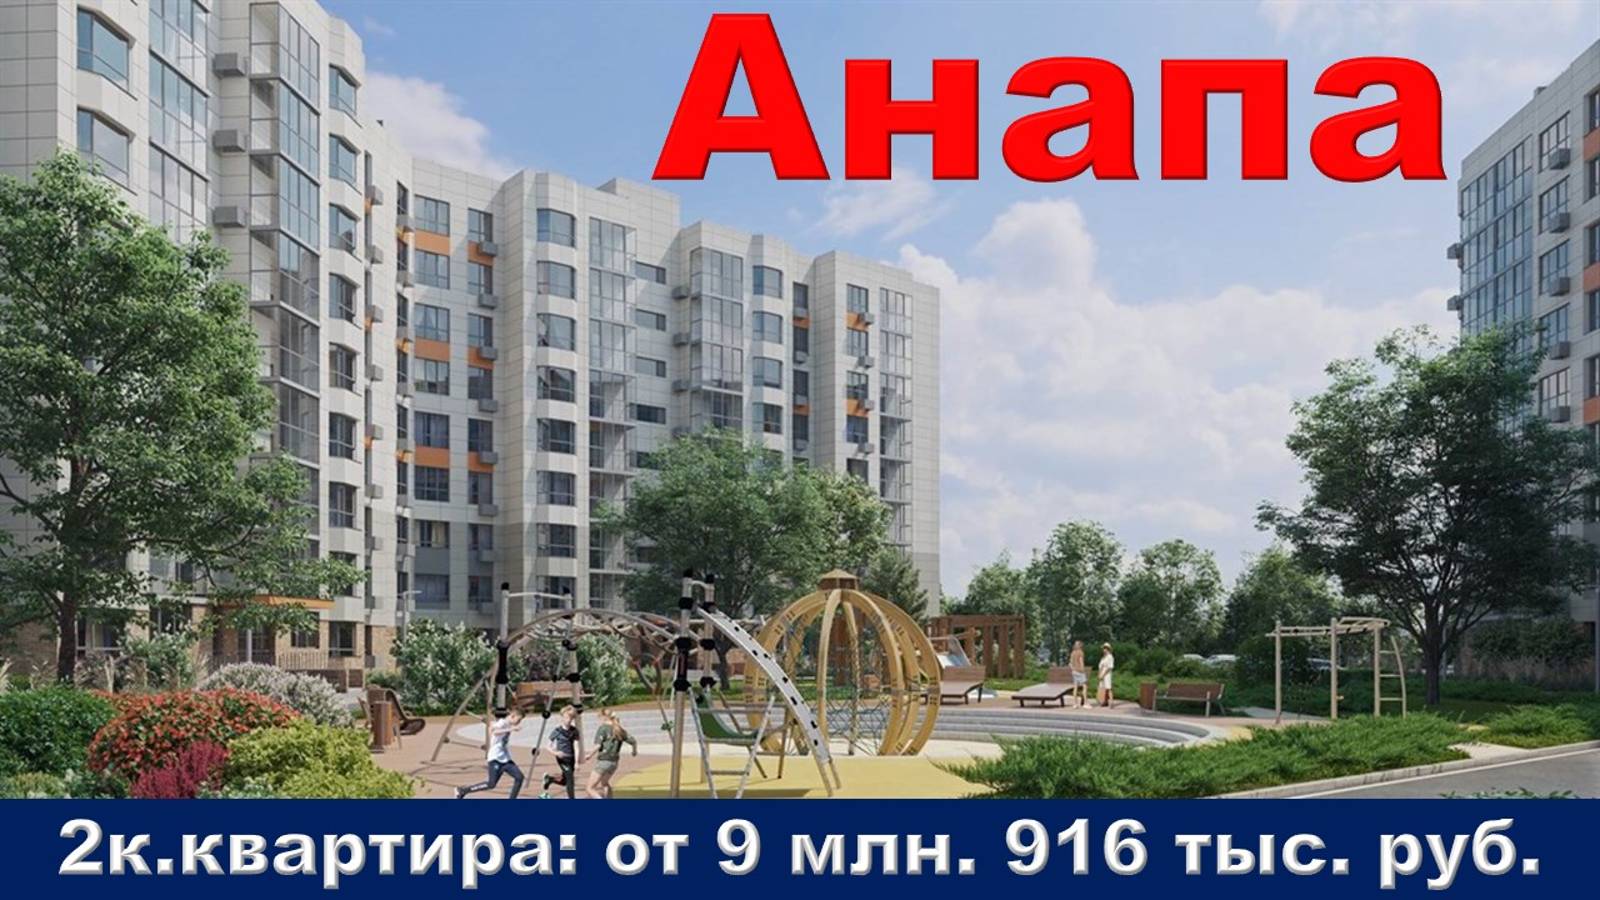 Анапа. 2к. квартира от 9 млн. 916 тыс. руб.